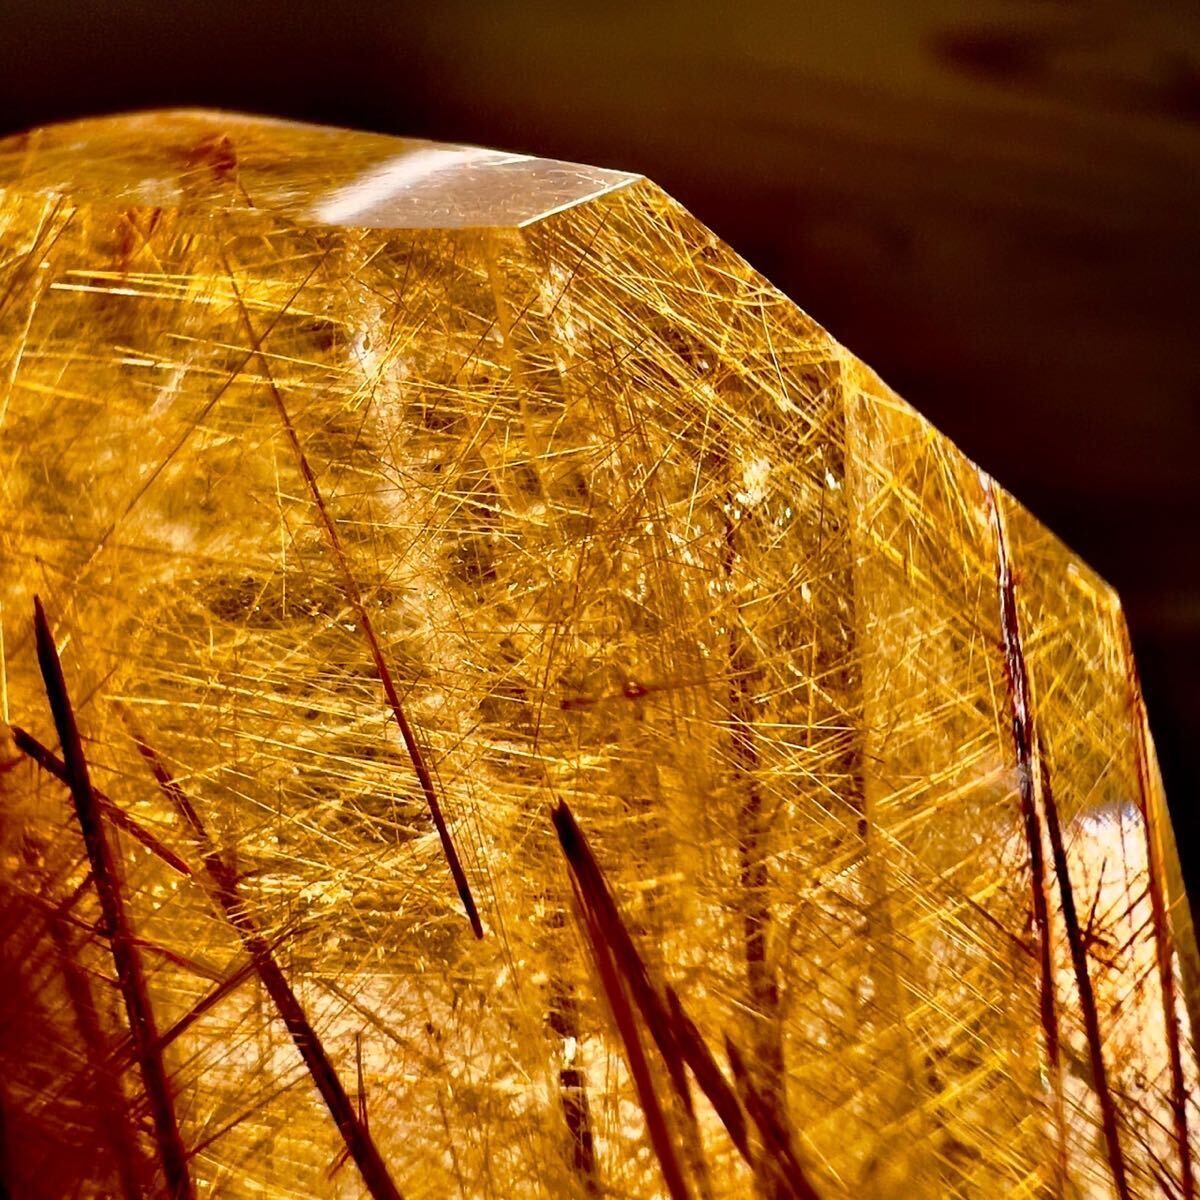 【ヒマラヤ水晶】ゴールドルチルクォーツ ルチル 金紅石 水晶 クォーツ クリスタル ポリッシュ 天然石 原石 鉱物 鉱物標本 石の画像6